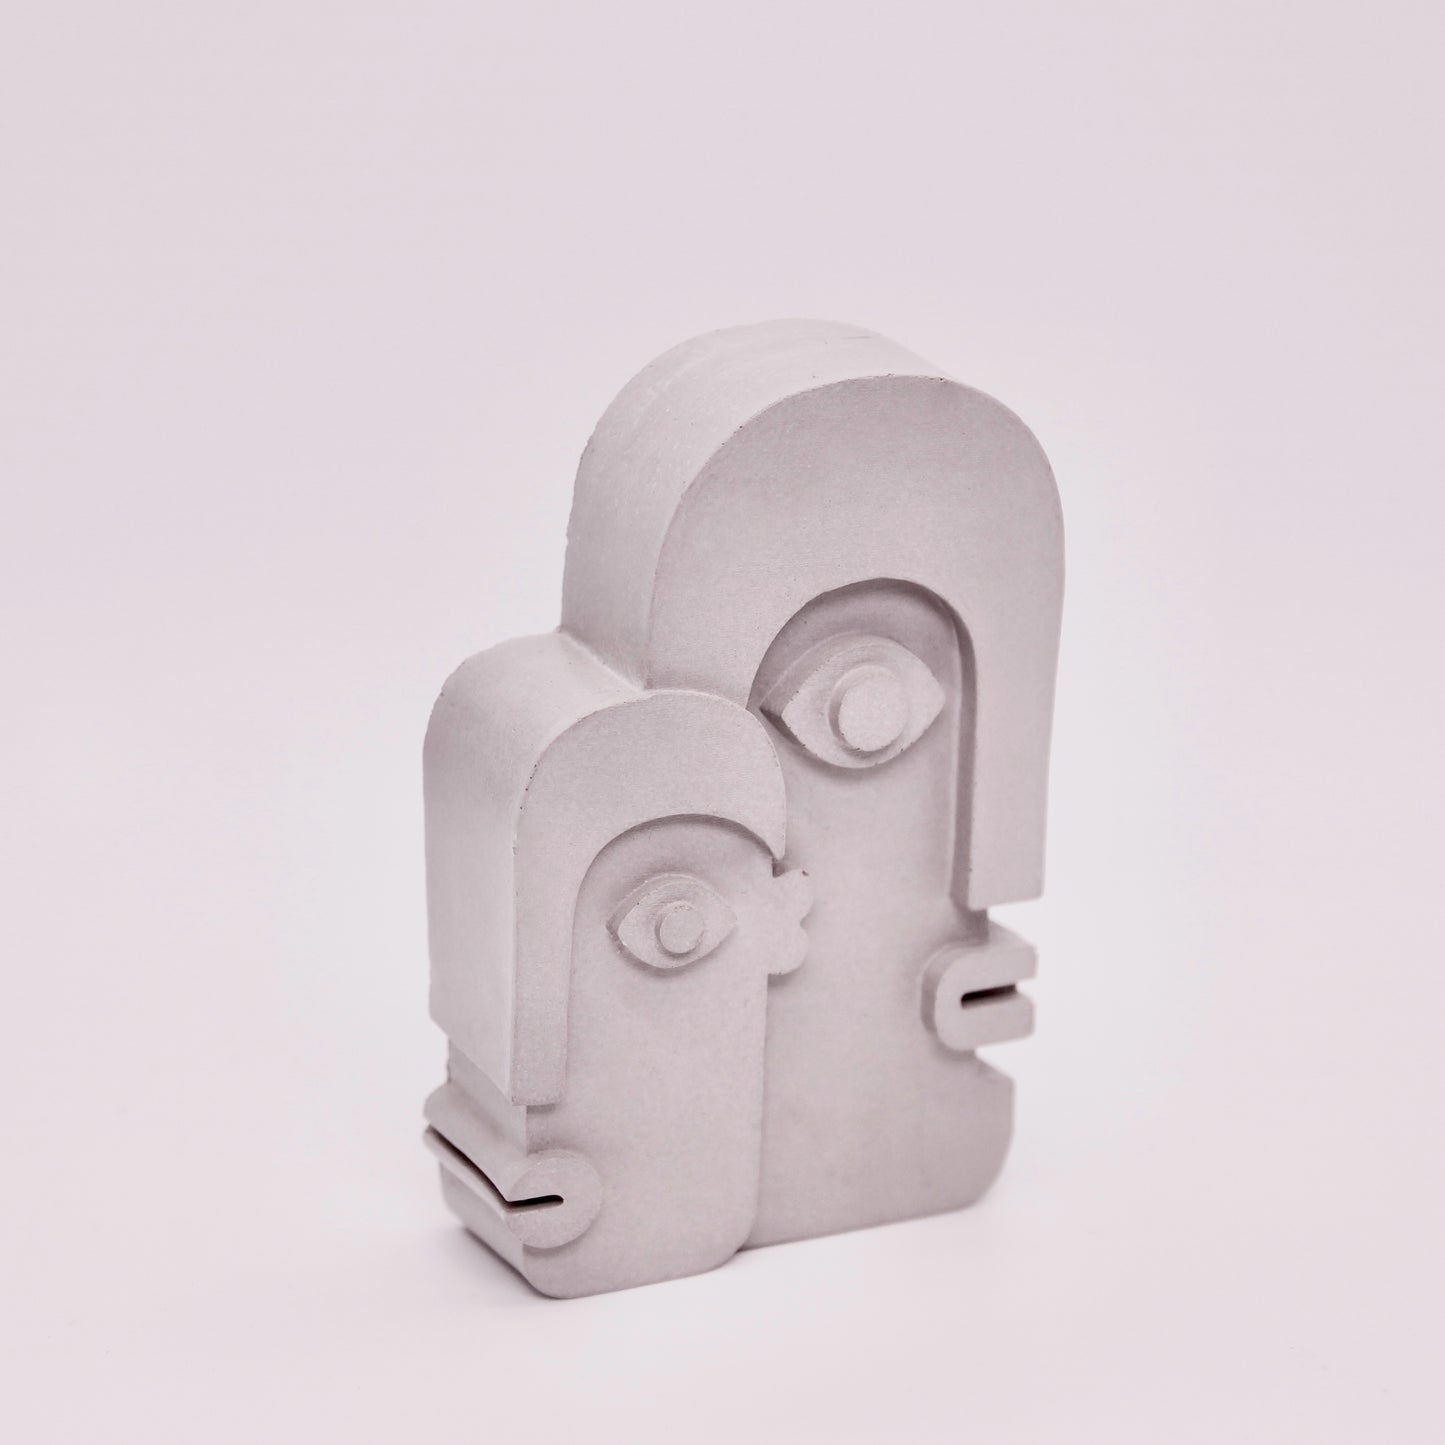 Concrete Two Faces Mini Sculpture - Grey